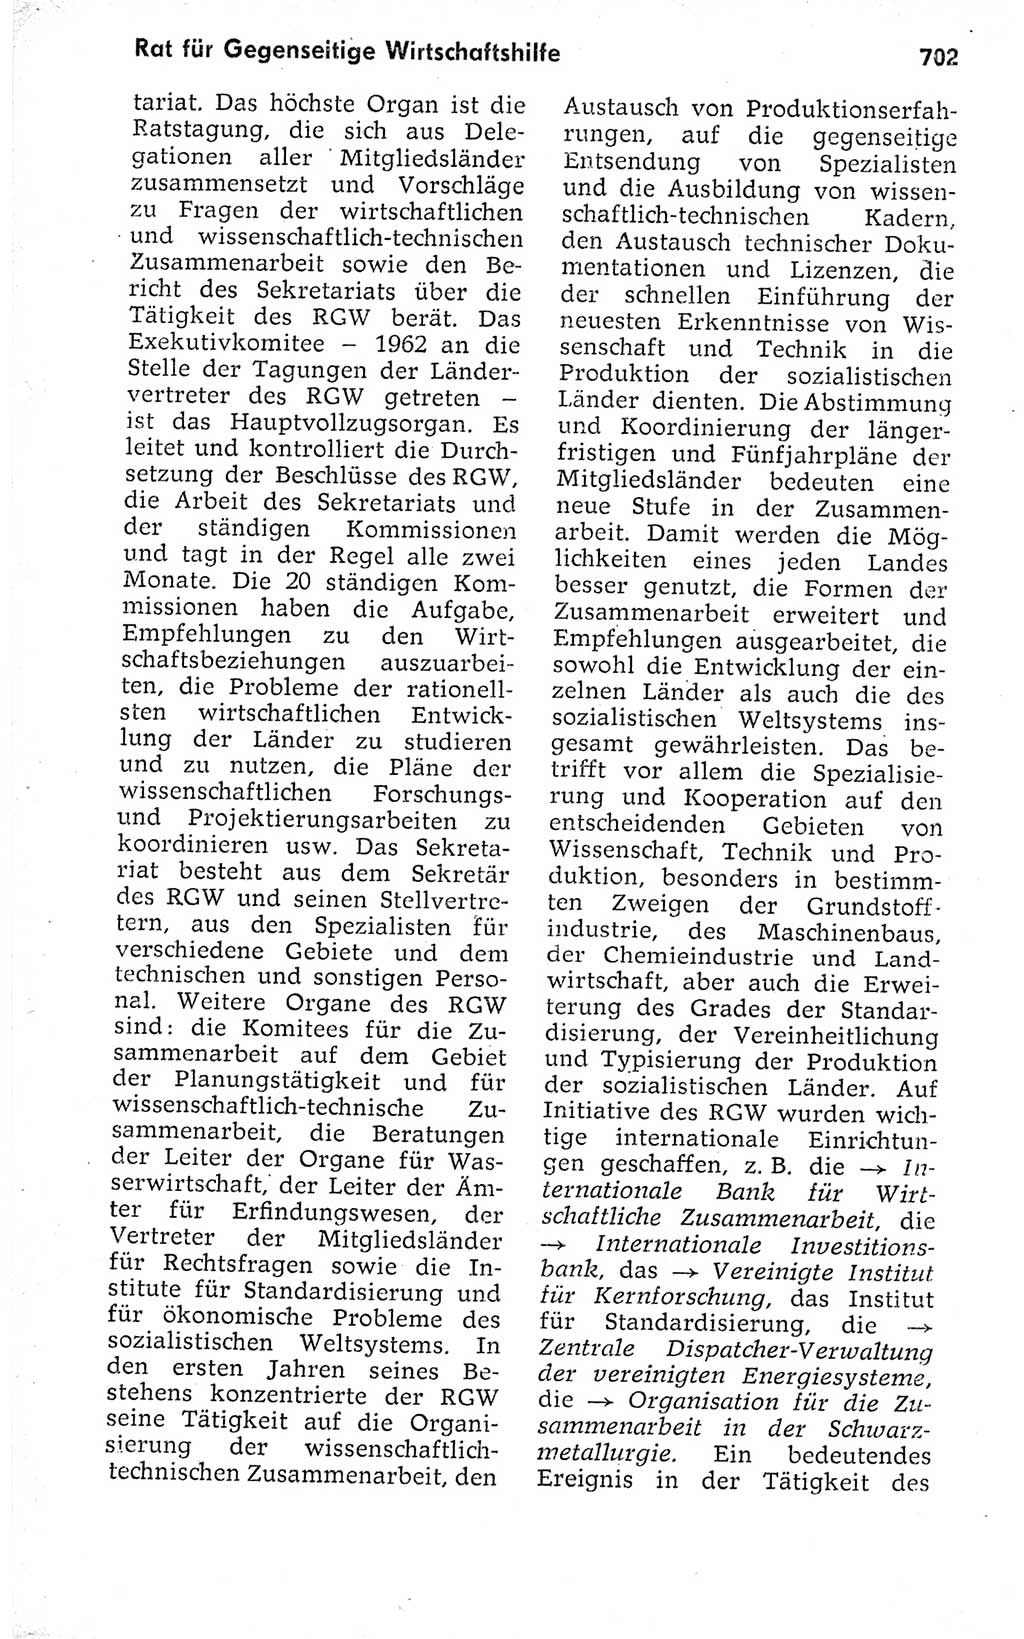 Kleines politisches Wörterbuch [Deutsche Demokratische Republik (DDR)] 1973, Seite 702 (Kl. pol. Wb. DDR 1973, S. 702)